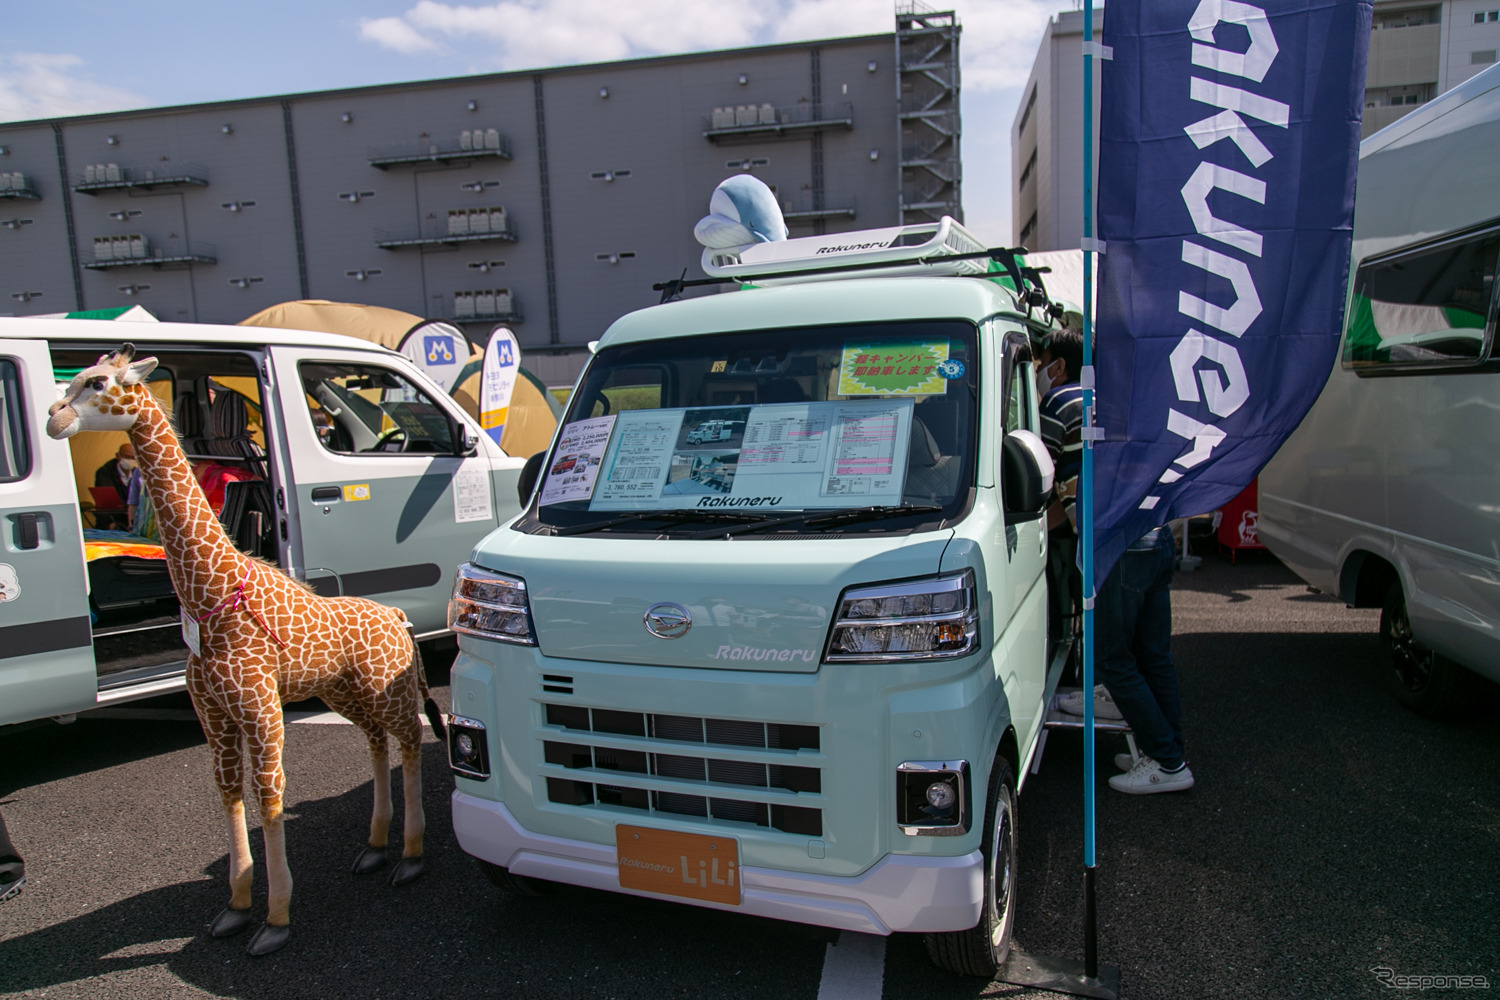 対面式ダイネットとアルミフレームキットが特徴の軽キャンパー「ラクネルリリィ」…神奈川キャンピングカーフェア